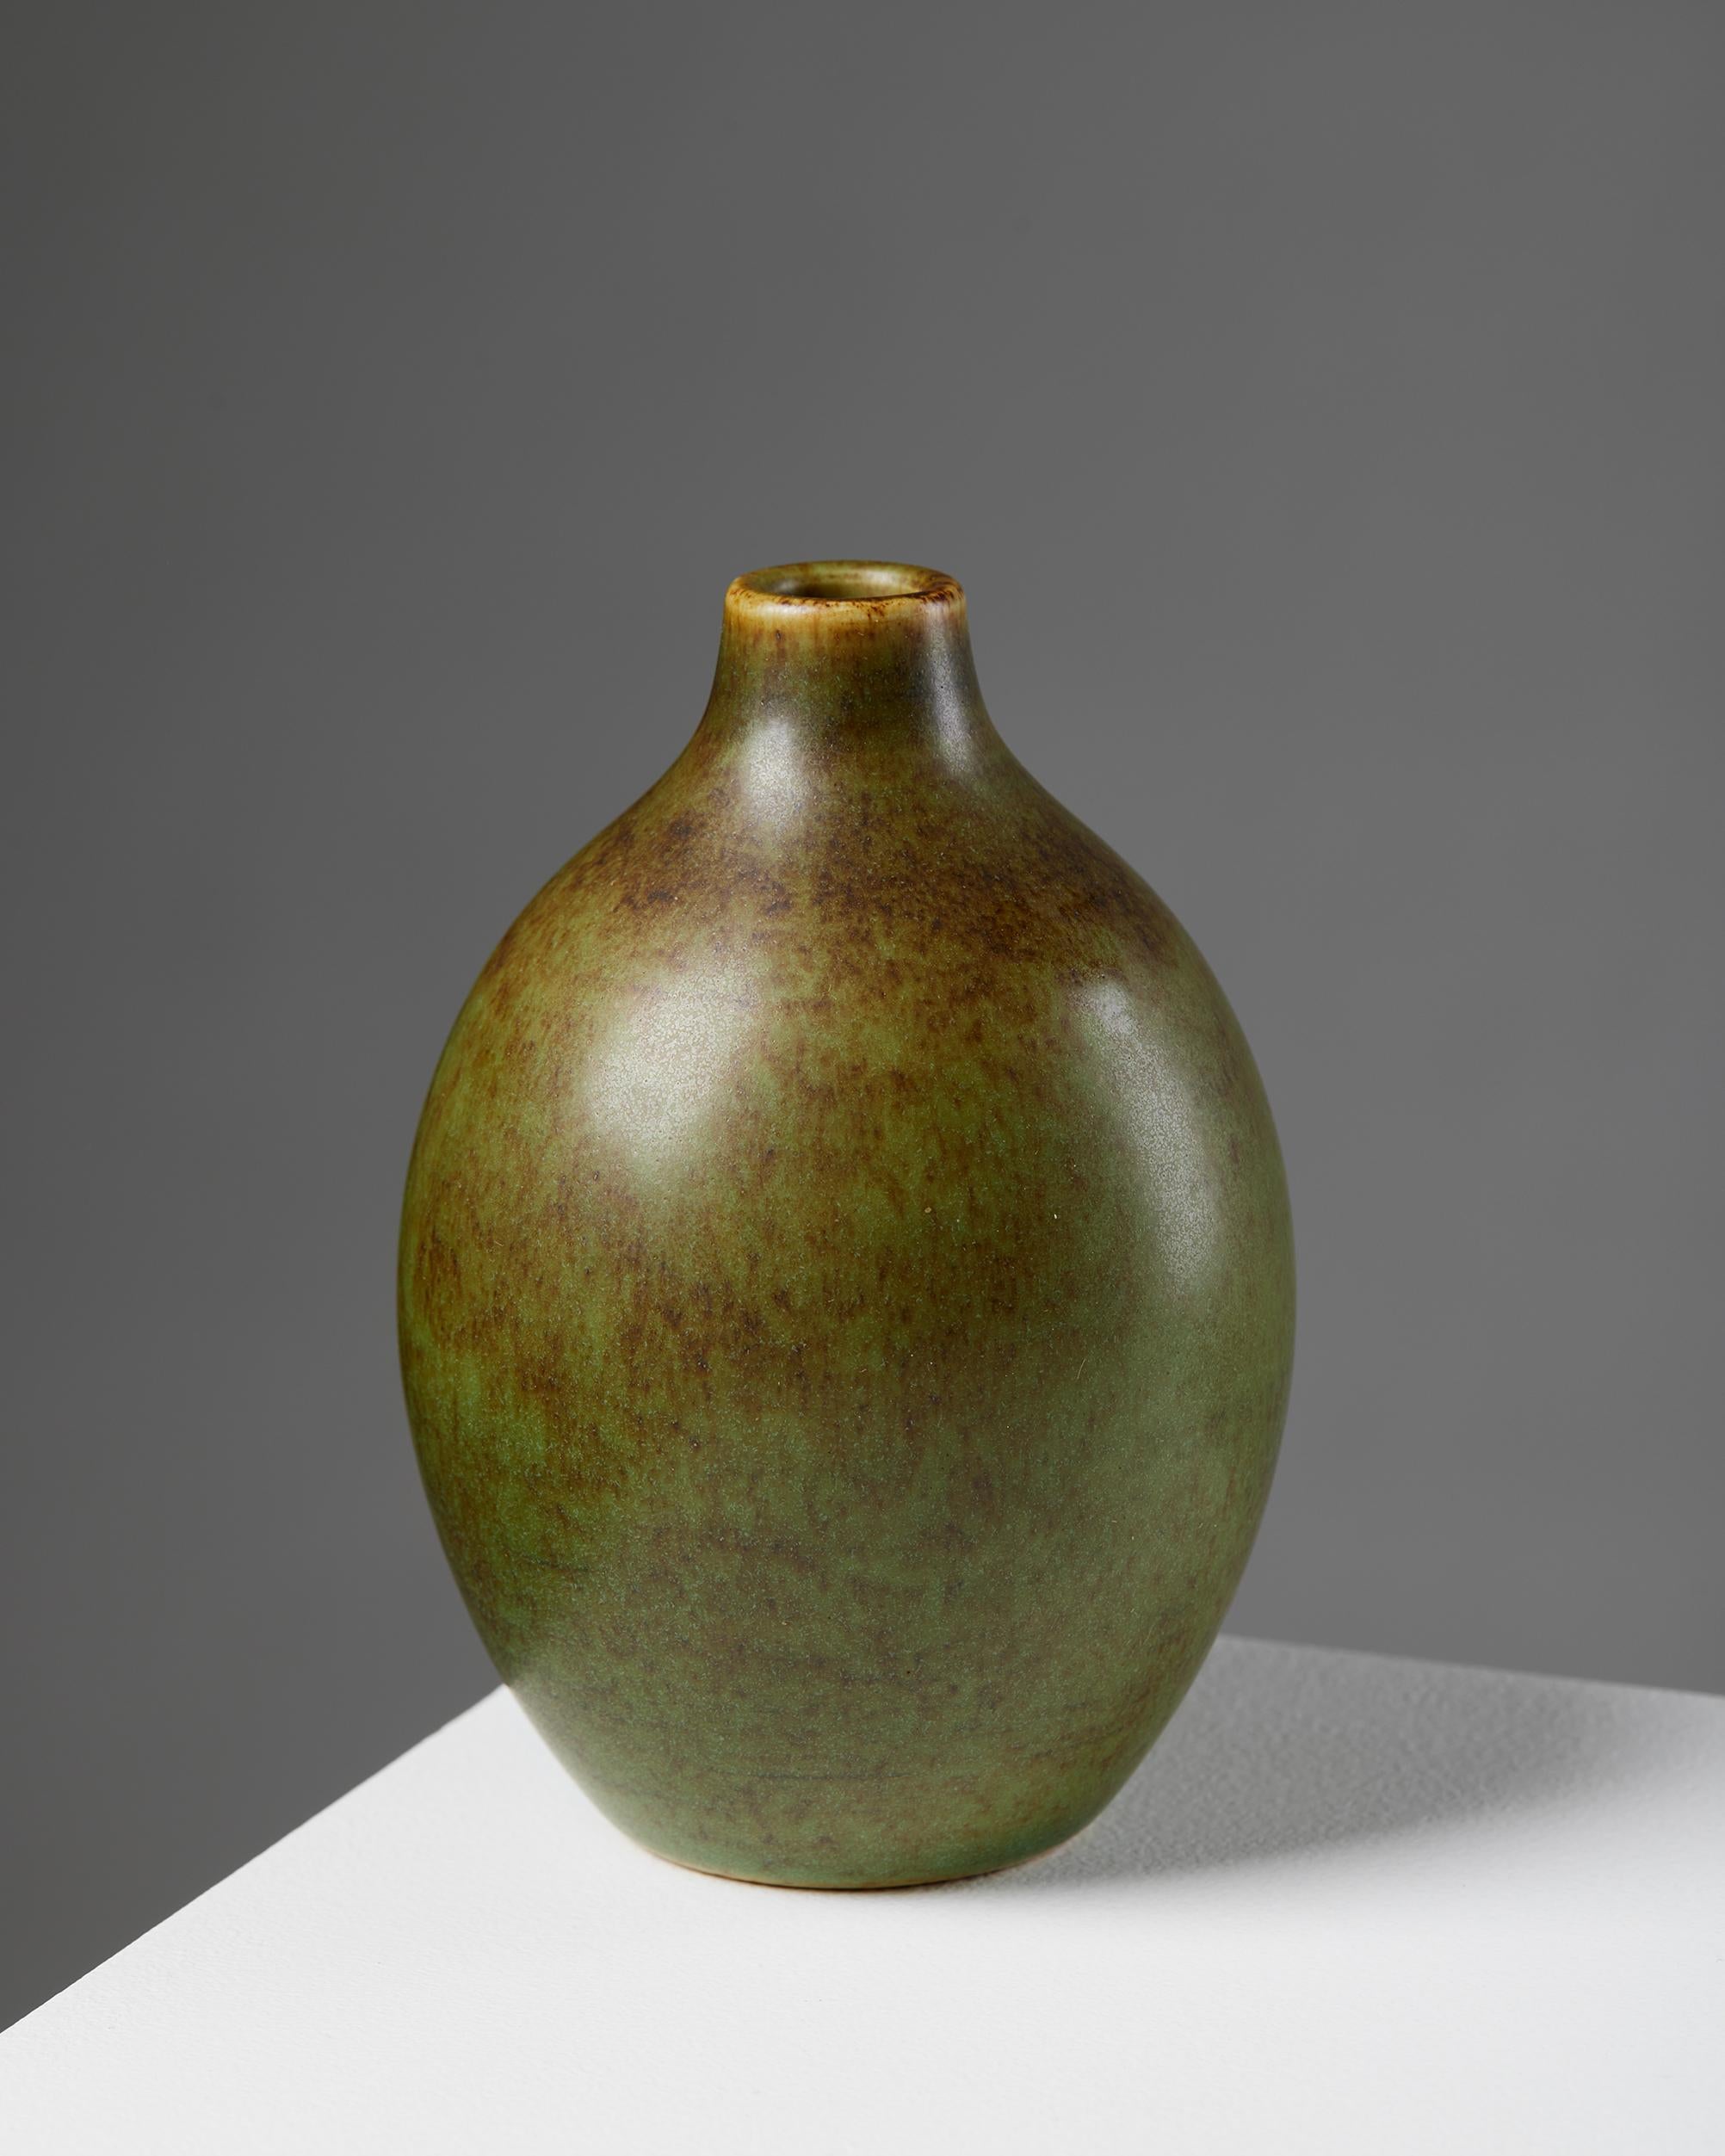 Vase designed by Erich and Ingrid Triller for Tobo,
Sweden, 1950s.

Stoneware.

Signed.

H: 13 cm
D: 8.5 cm.